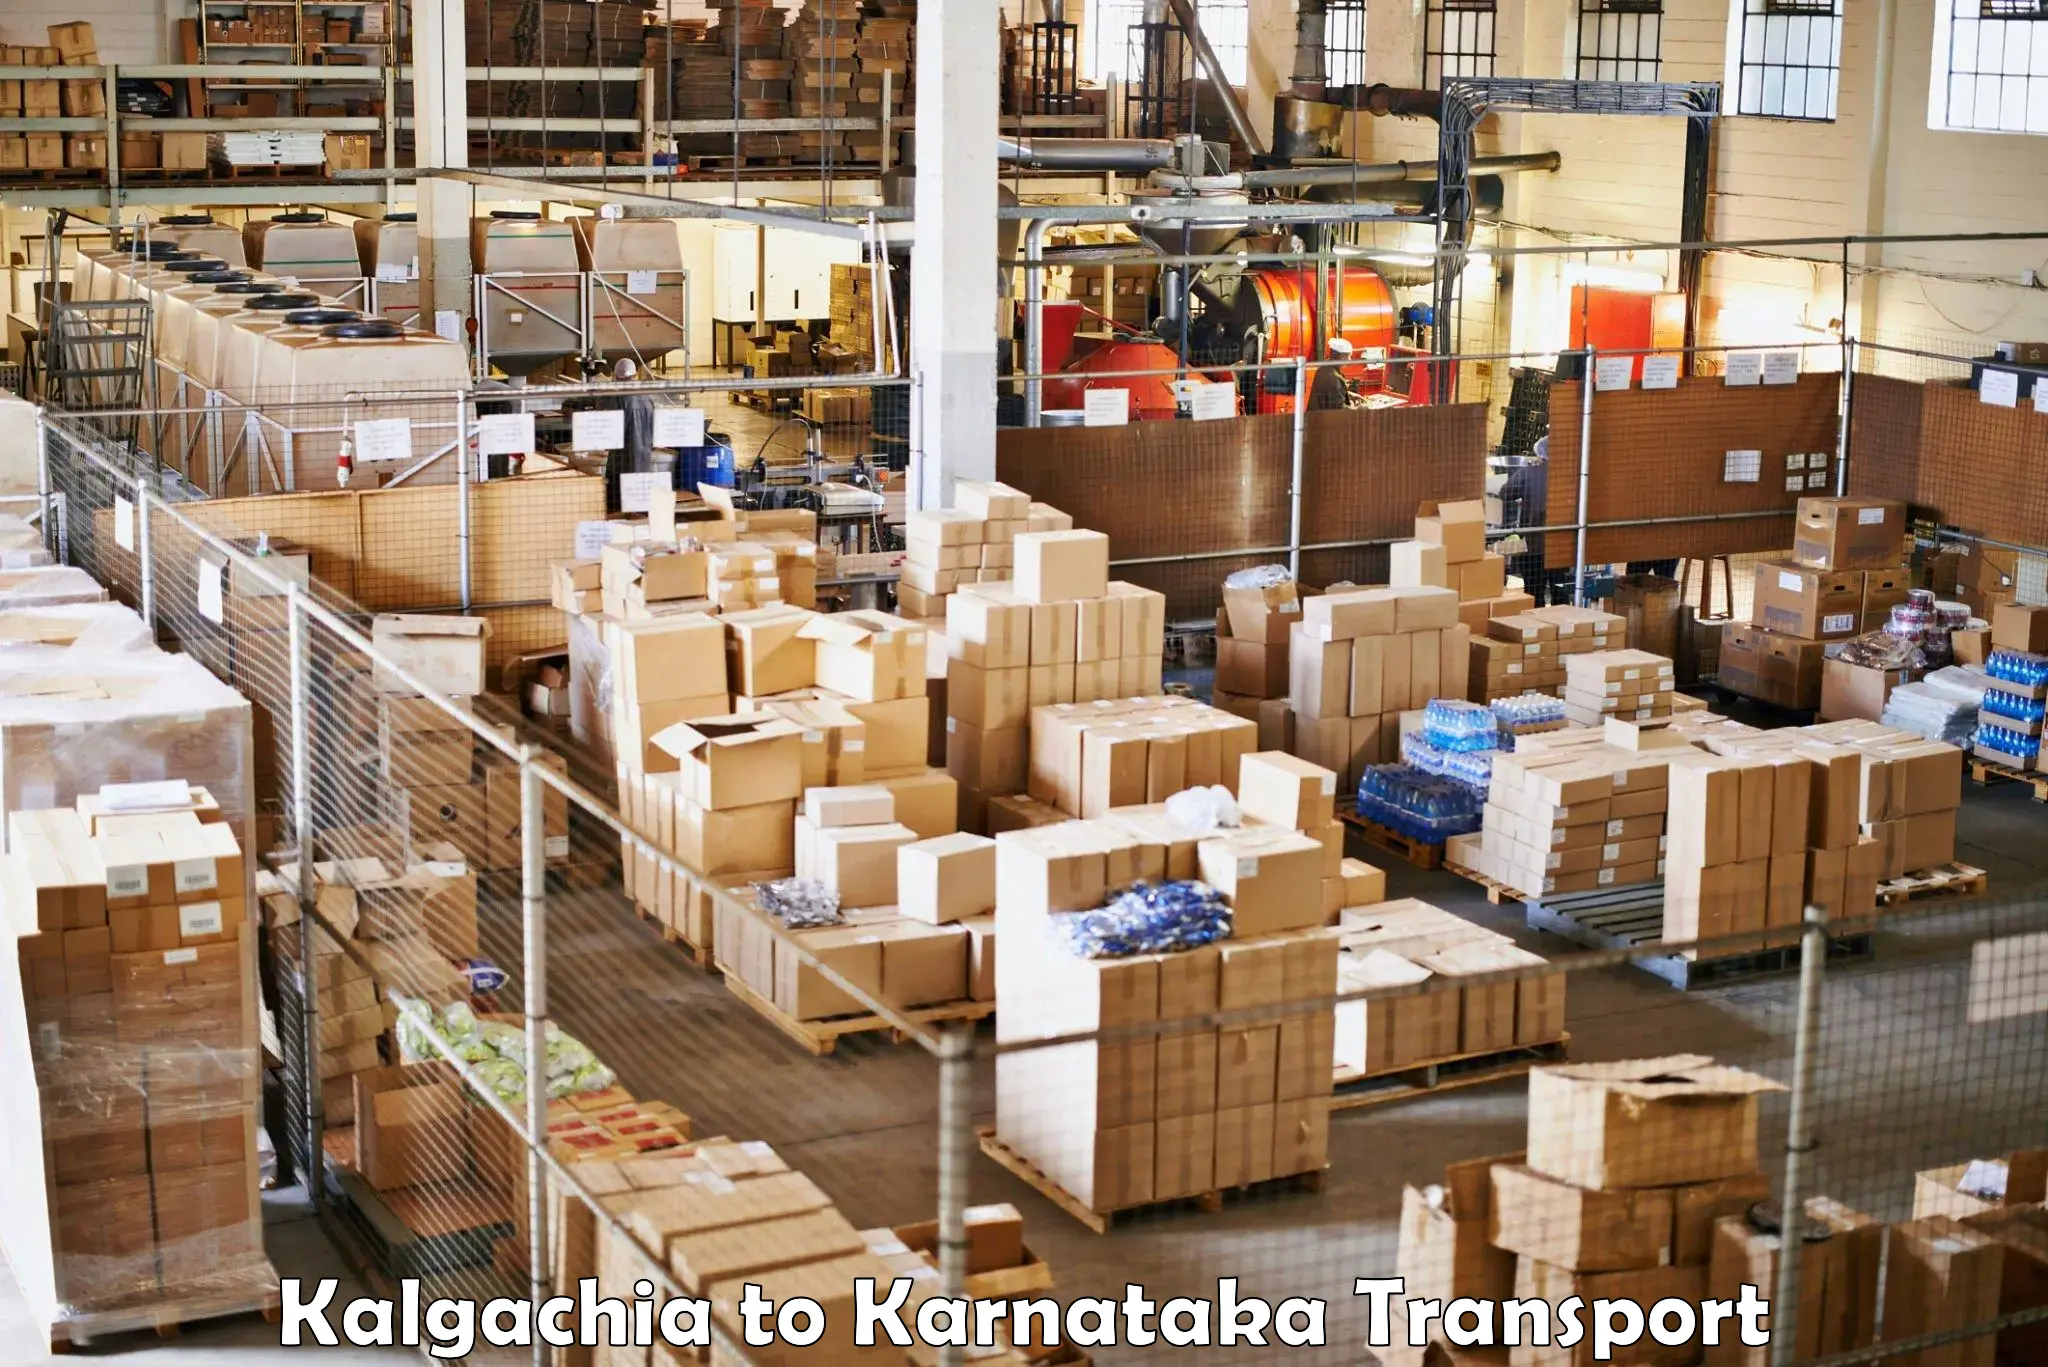 Air freight transport services Kalgachia to Hagaribommanahalli